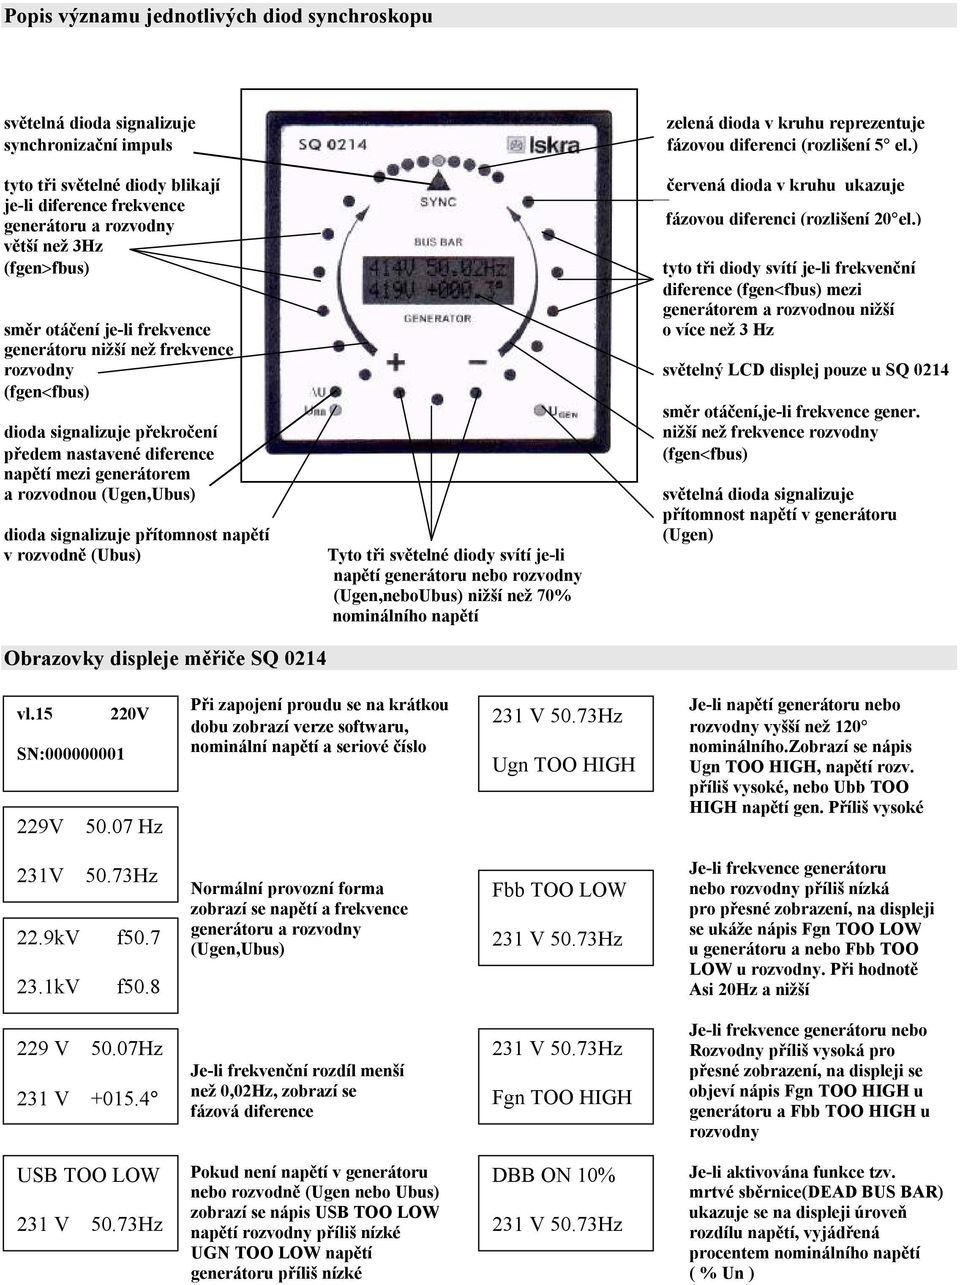 mezi generátorem a rozvodnou nižší směr otáčení je-li frekvence o více než 3 Hz generátoru nižší než frekvence rozvodny světelný LCD displej pouze u SQ 0214 (fgen<fbus) směr otáčení,je-li frekvence